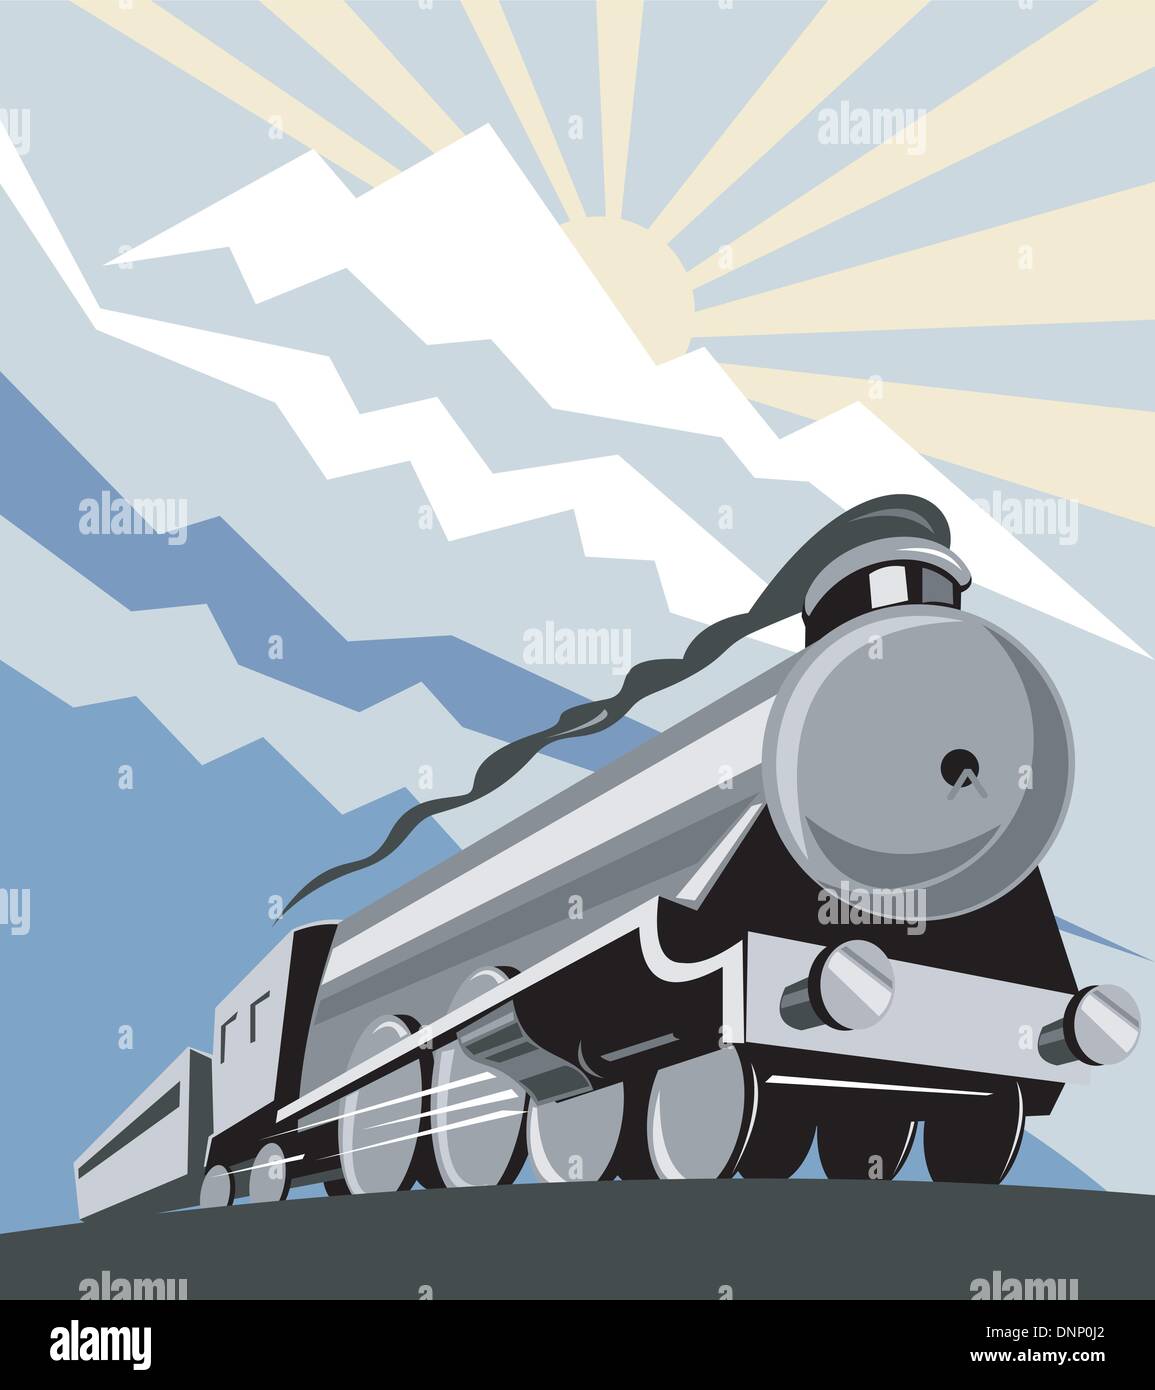 Illustration d'un train à vapeur locomotive de chemin de fer, qui se fait dans le style rétro gravure sur bois Illustration de Vecteur